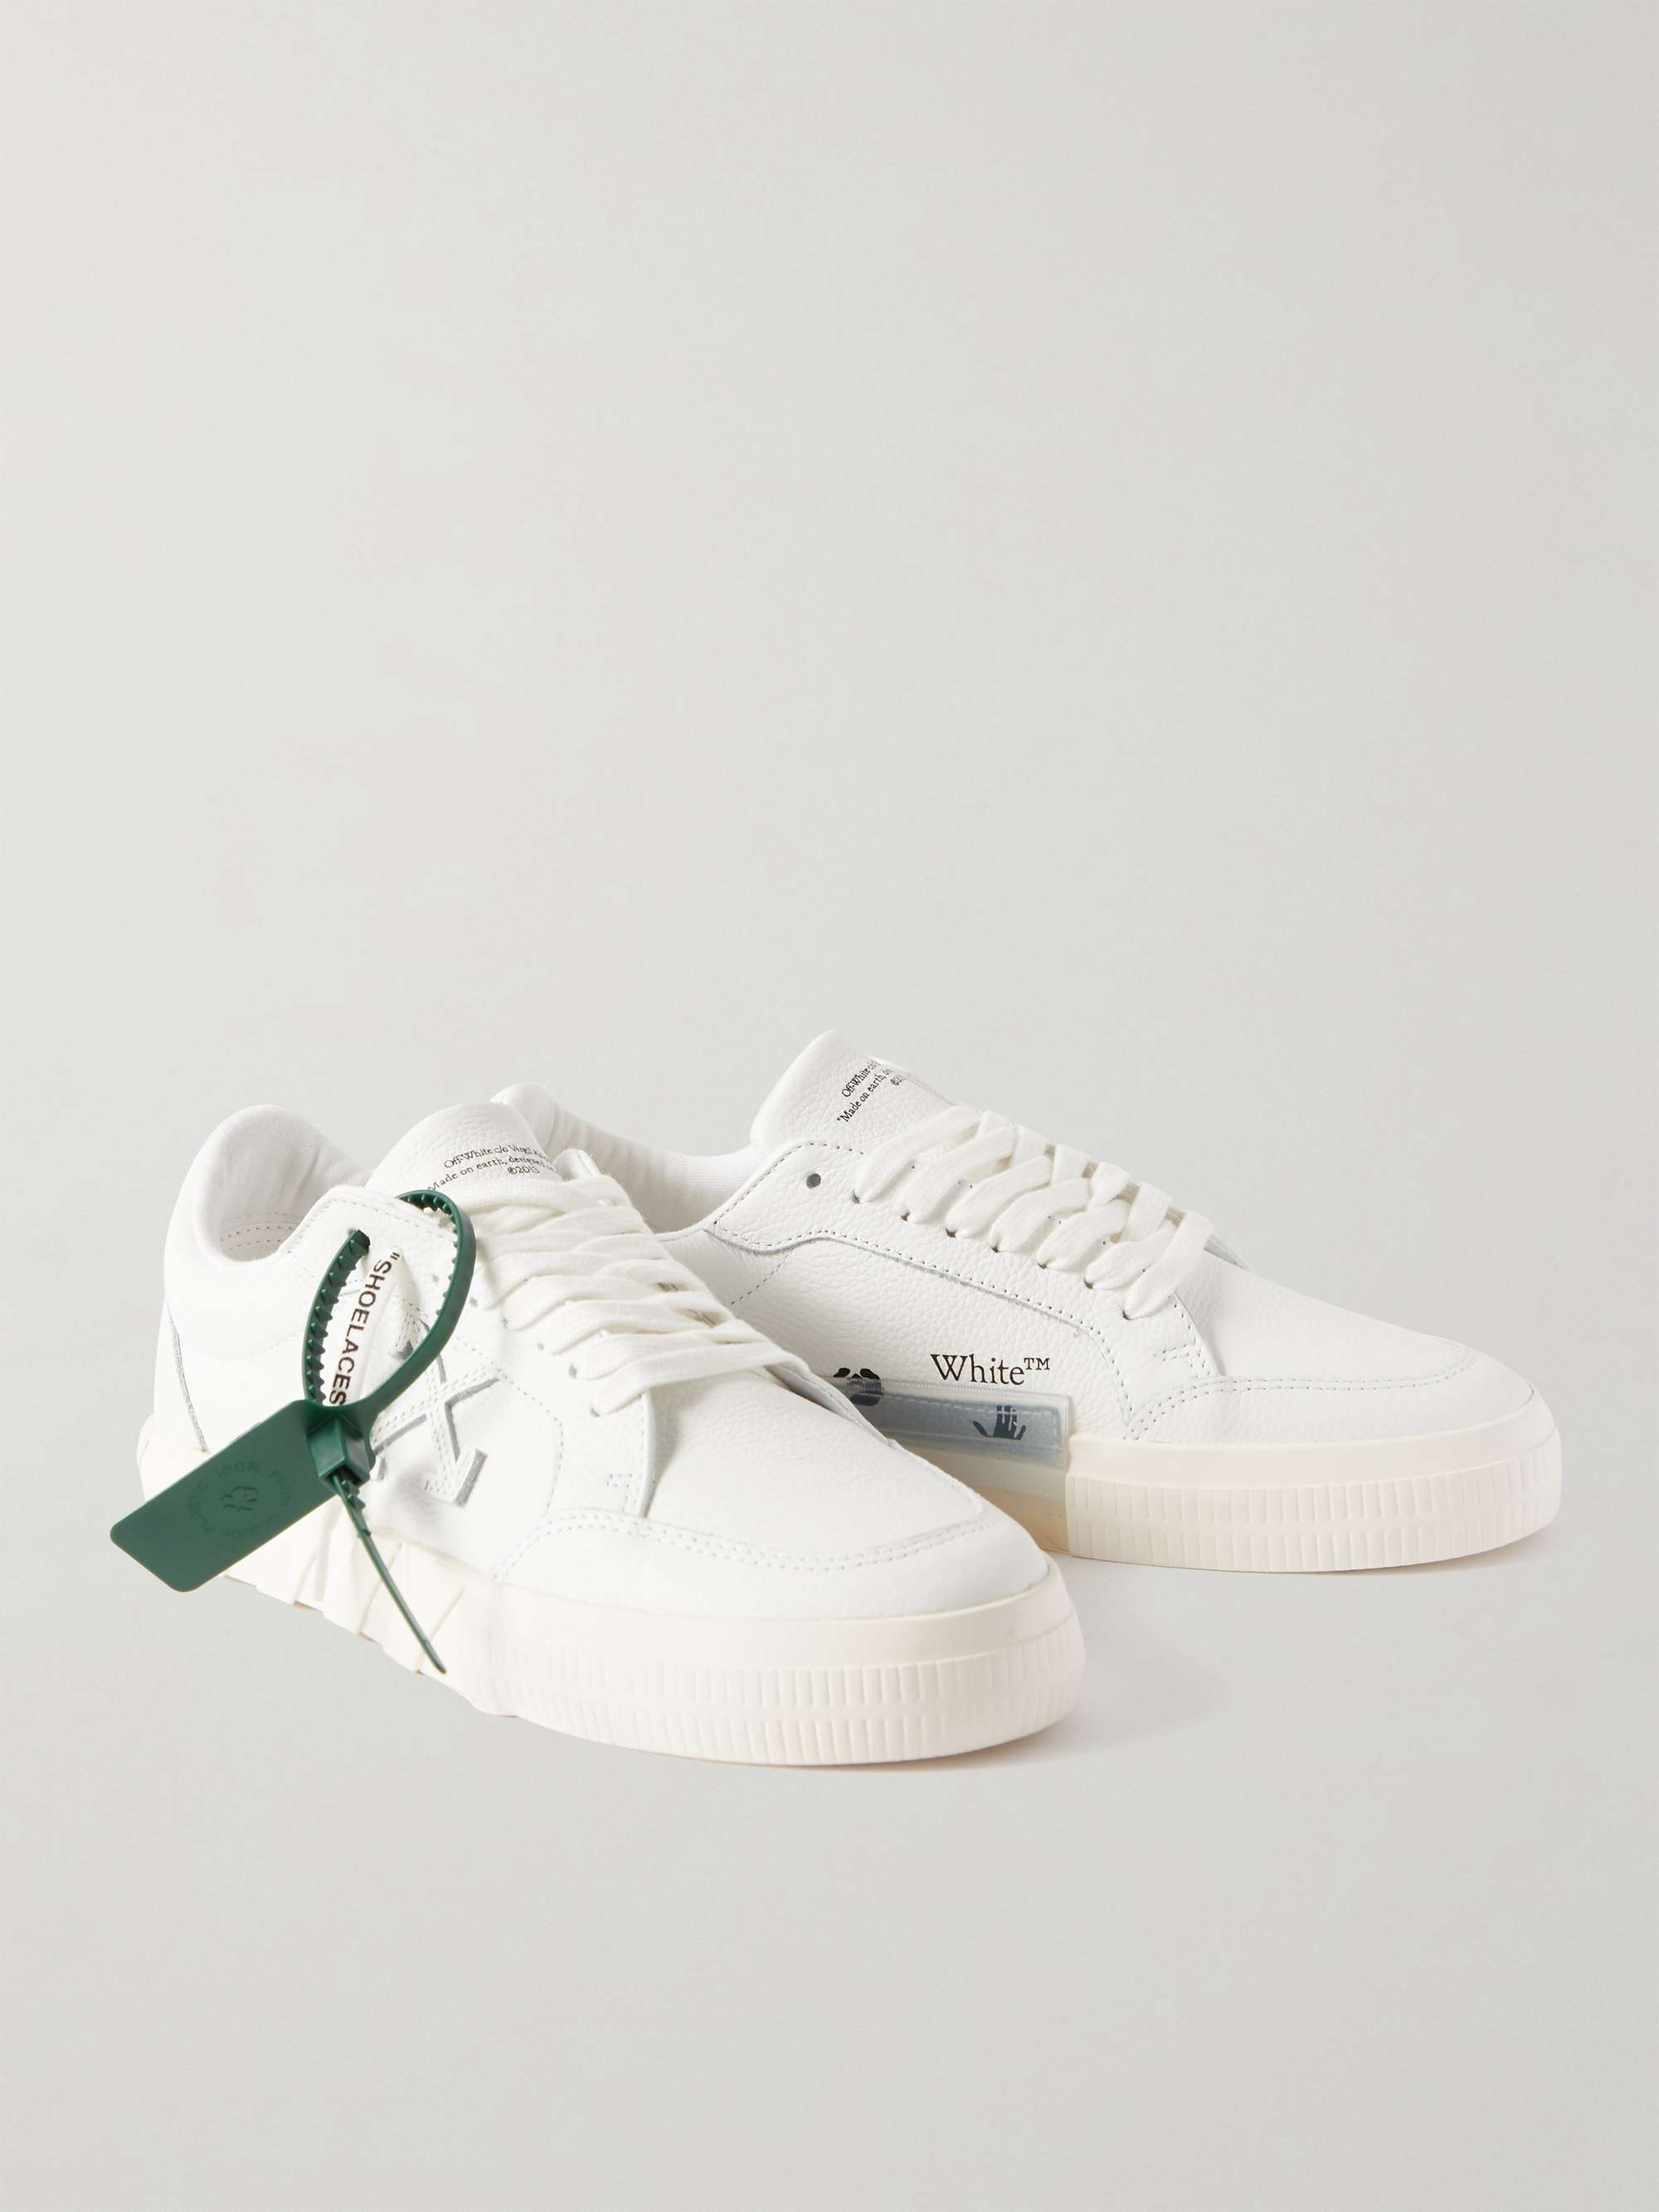 OFF-WHITE Full-Grain Leather Sneakers | MR PORTER